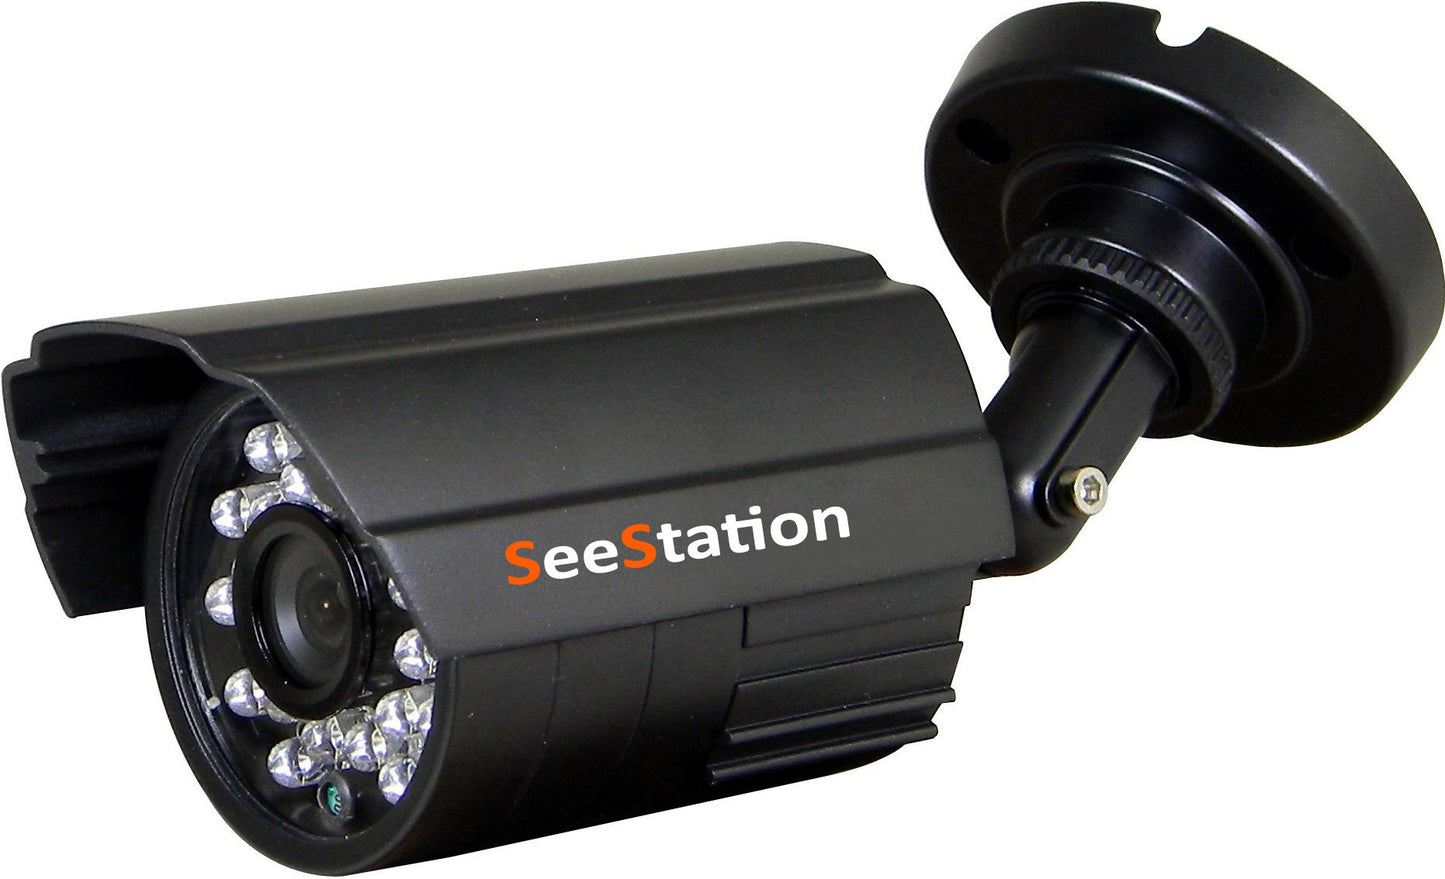 SeeStation C1139AF8-AB Bullet Camera Outdoor 700 TVL Fixed 3.6mm Lens 12V Black Housing